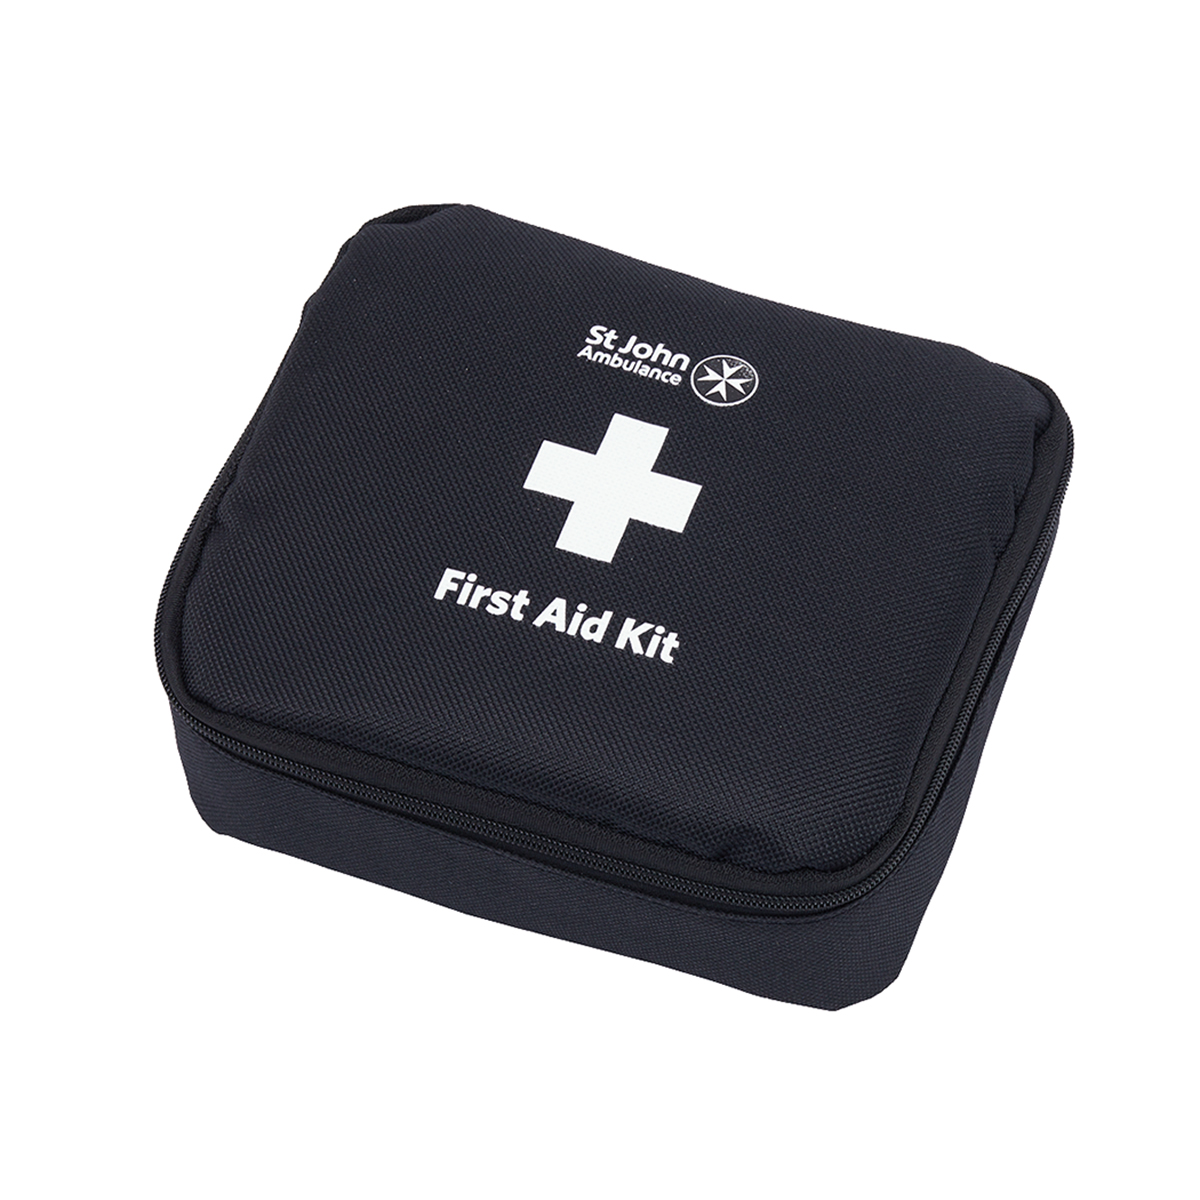 St John Ambulance Medium Motor Vehicle First Aid Kit BS 8599-2:2014